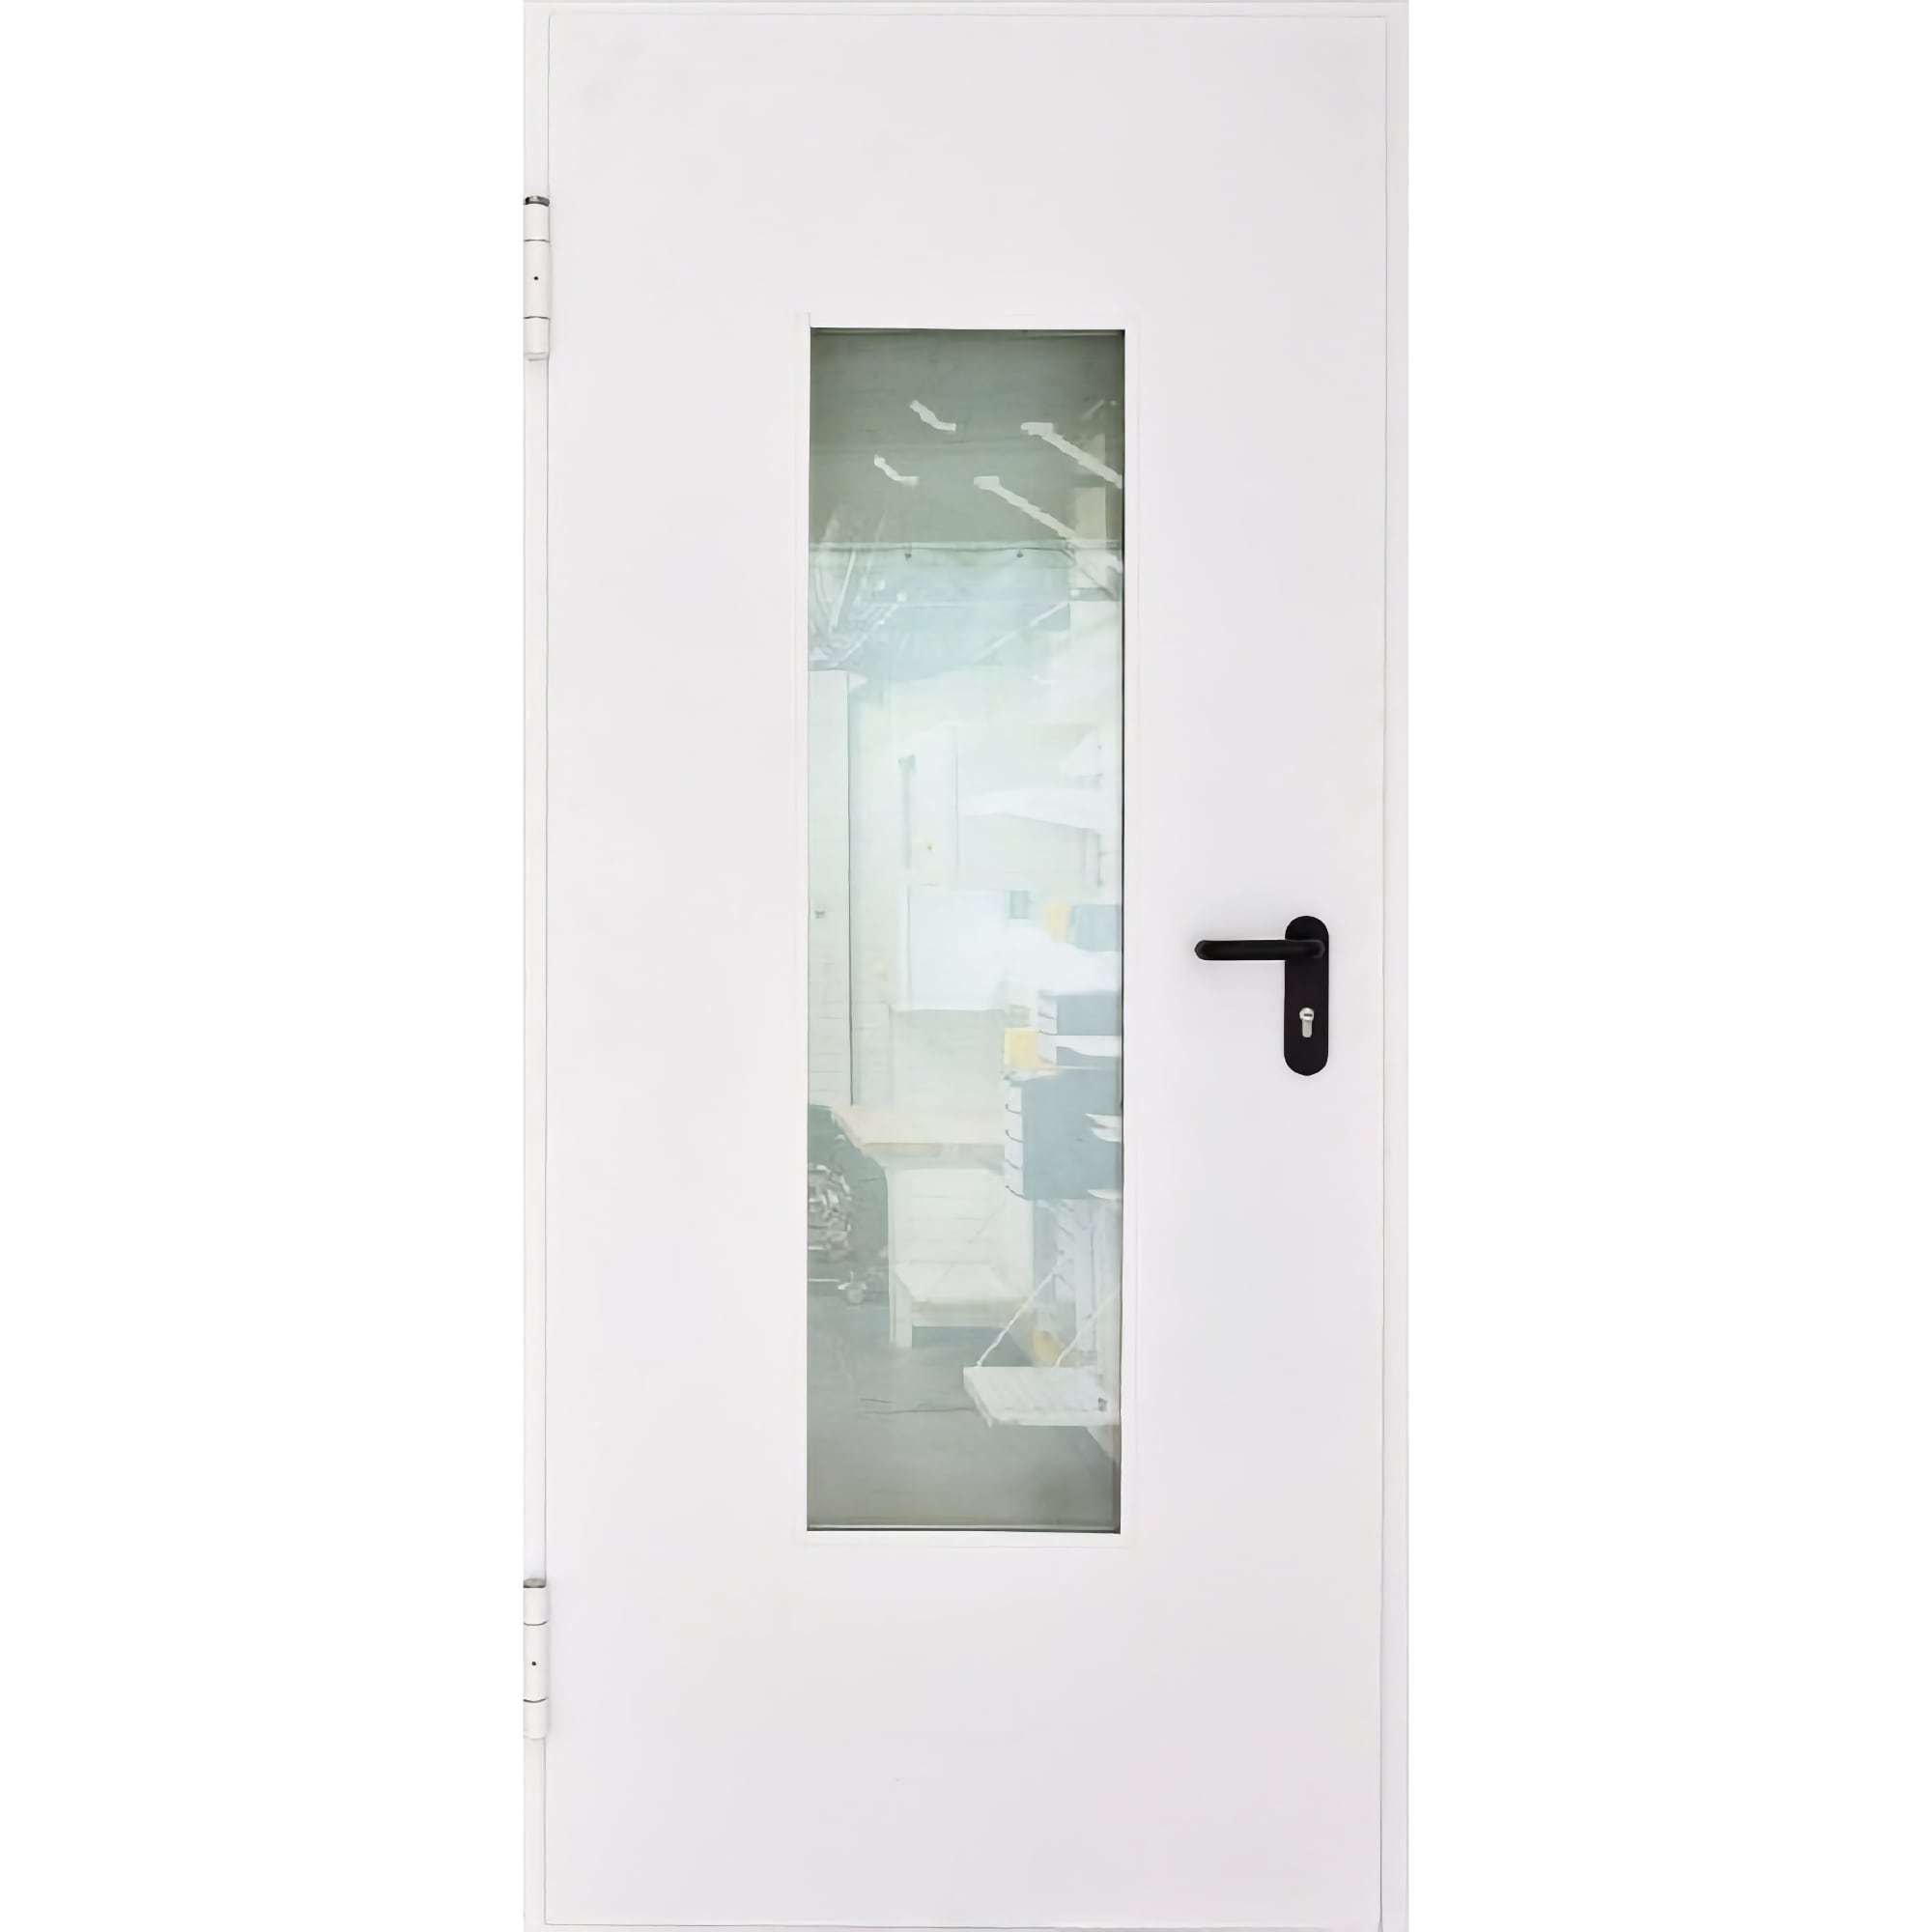 Противопожарная дверь с гарантией 5 лет, доступная для заказа в интернет-магазине - TD • петли с доводчиками • со стеклом 960*2050